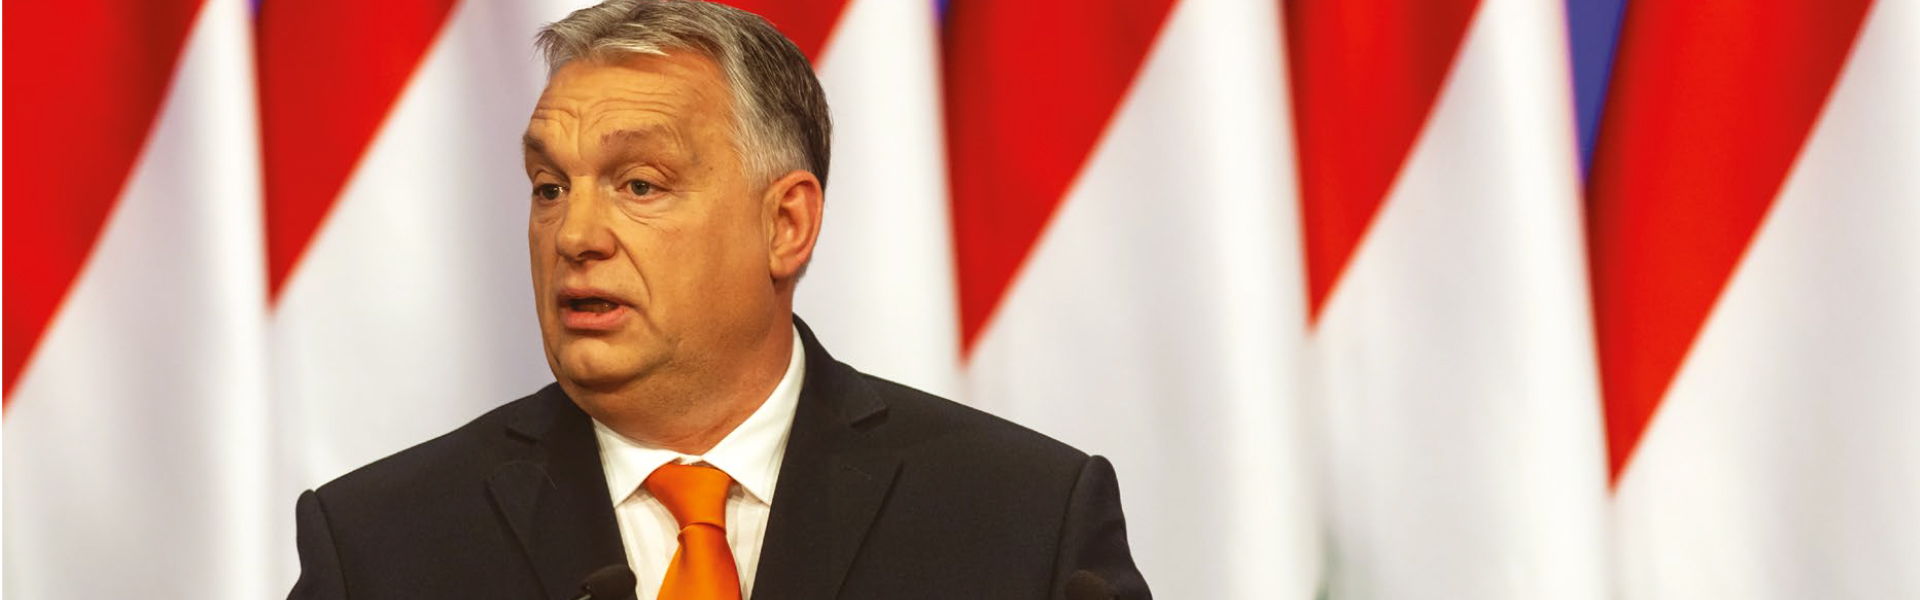 Виктор Орбан: нелиберальный демократ